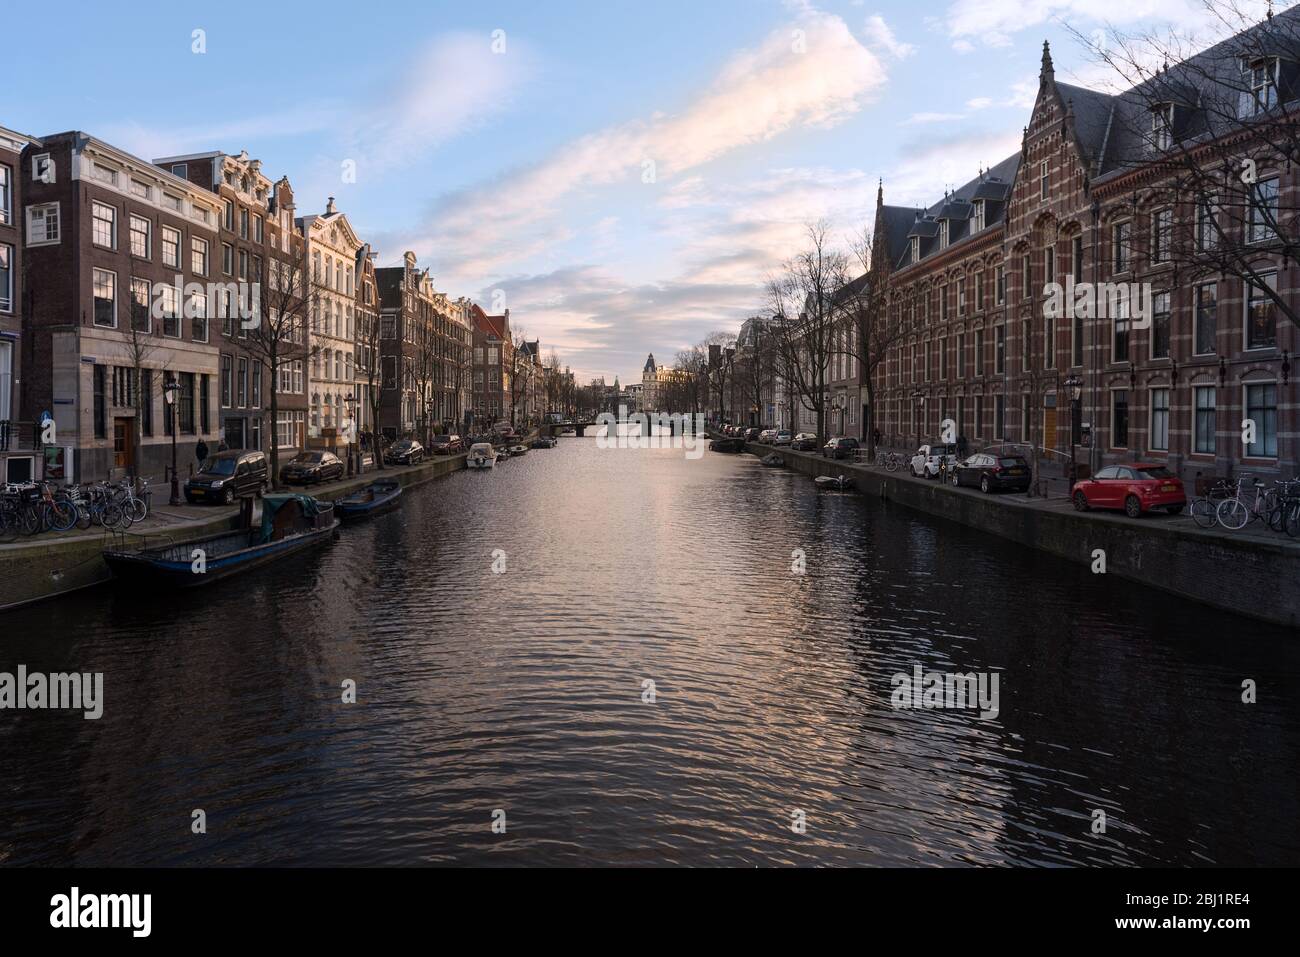 Casas históricas antiguas al lado del canal y edificios de una amplia sección de la red de canales de Amsterdam, Holanda. Foto de stock